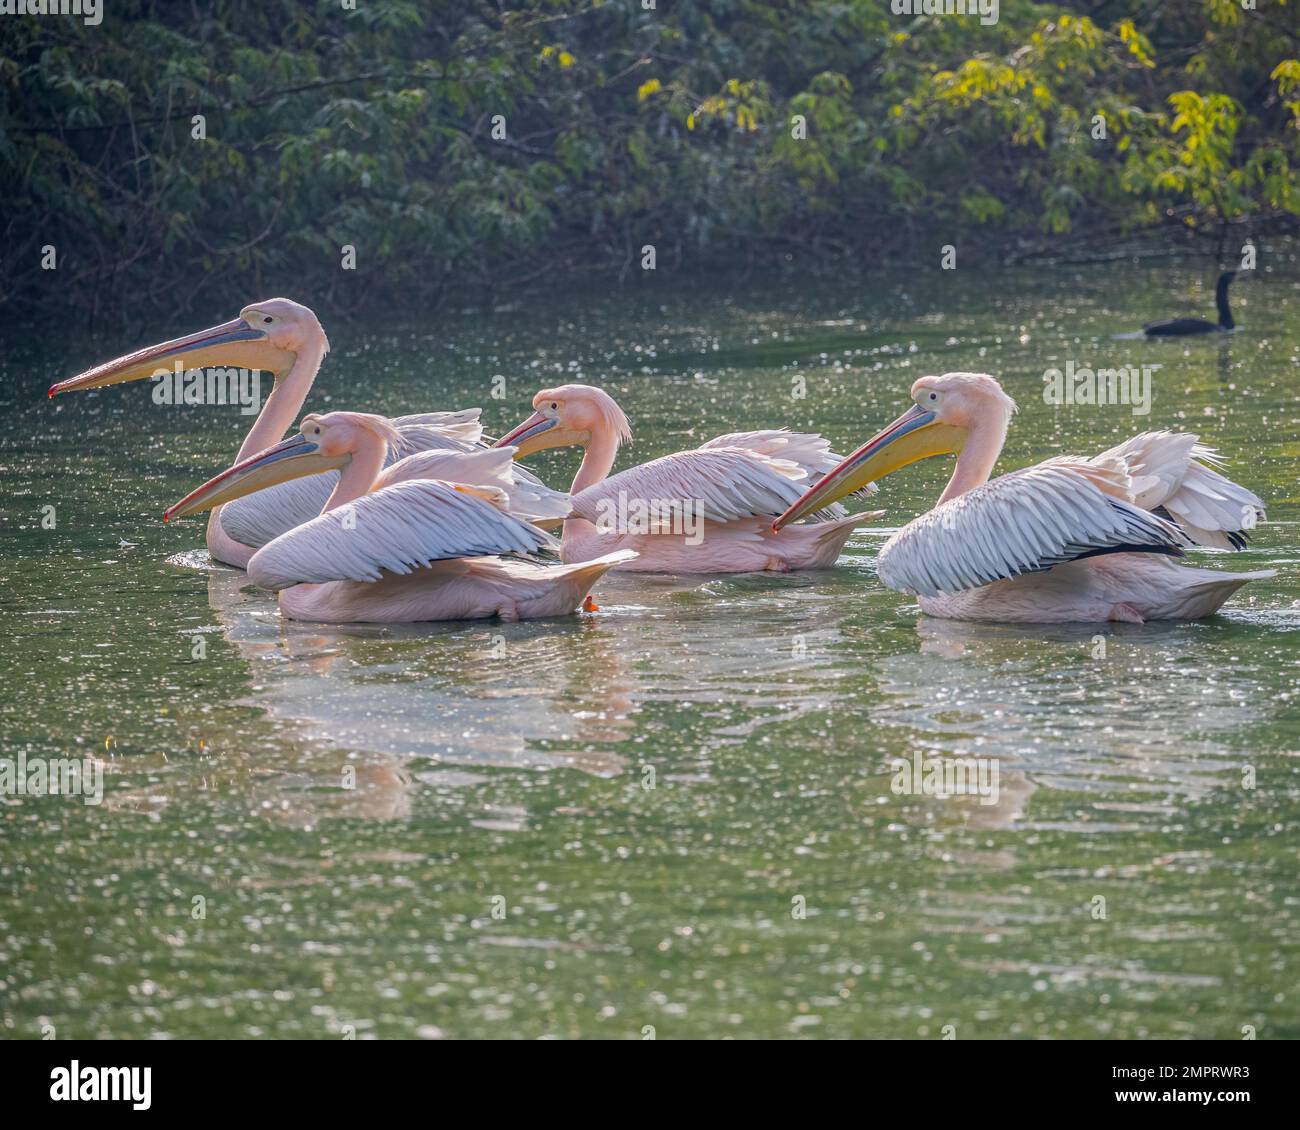 Quatre pélican roses nageant dans un lac Banque D'Images